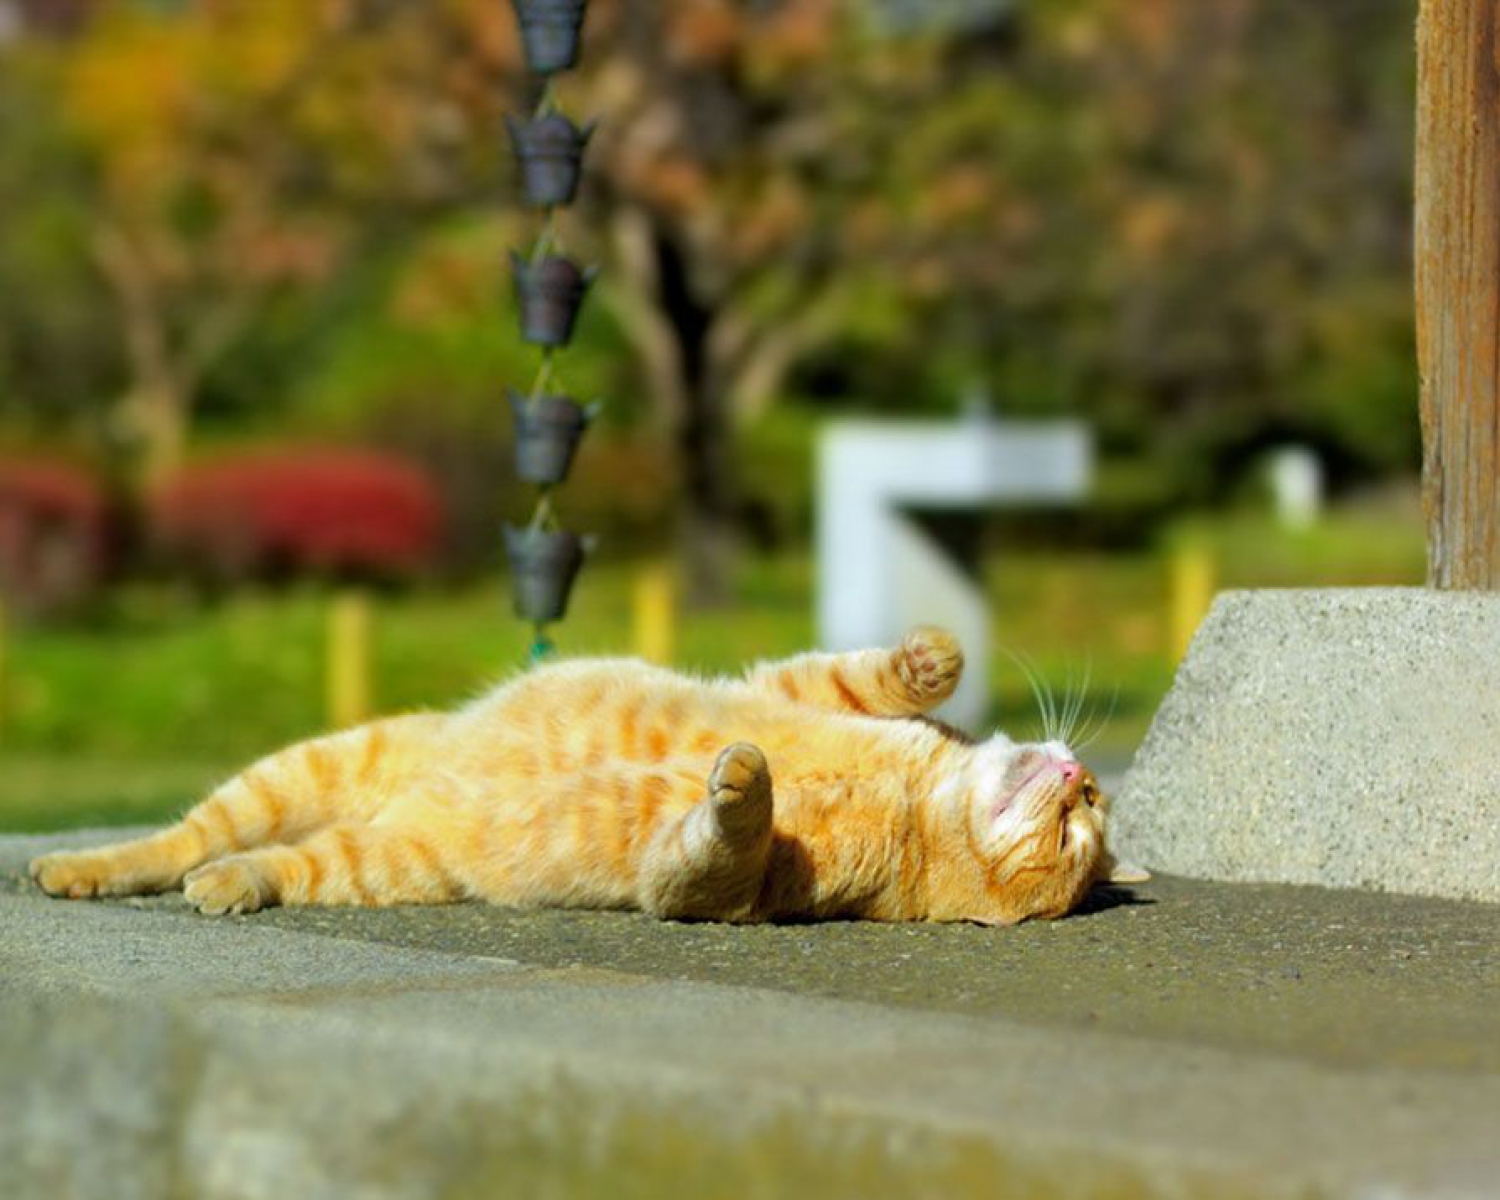 Теплый день род. Кот на солнышке. Кот греется на солнышке. Жаркое лето. Лето тепло.